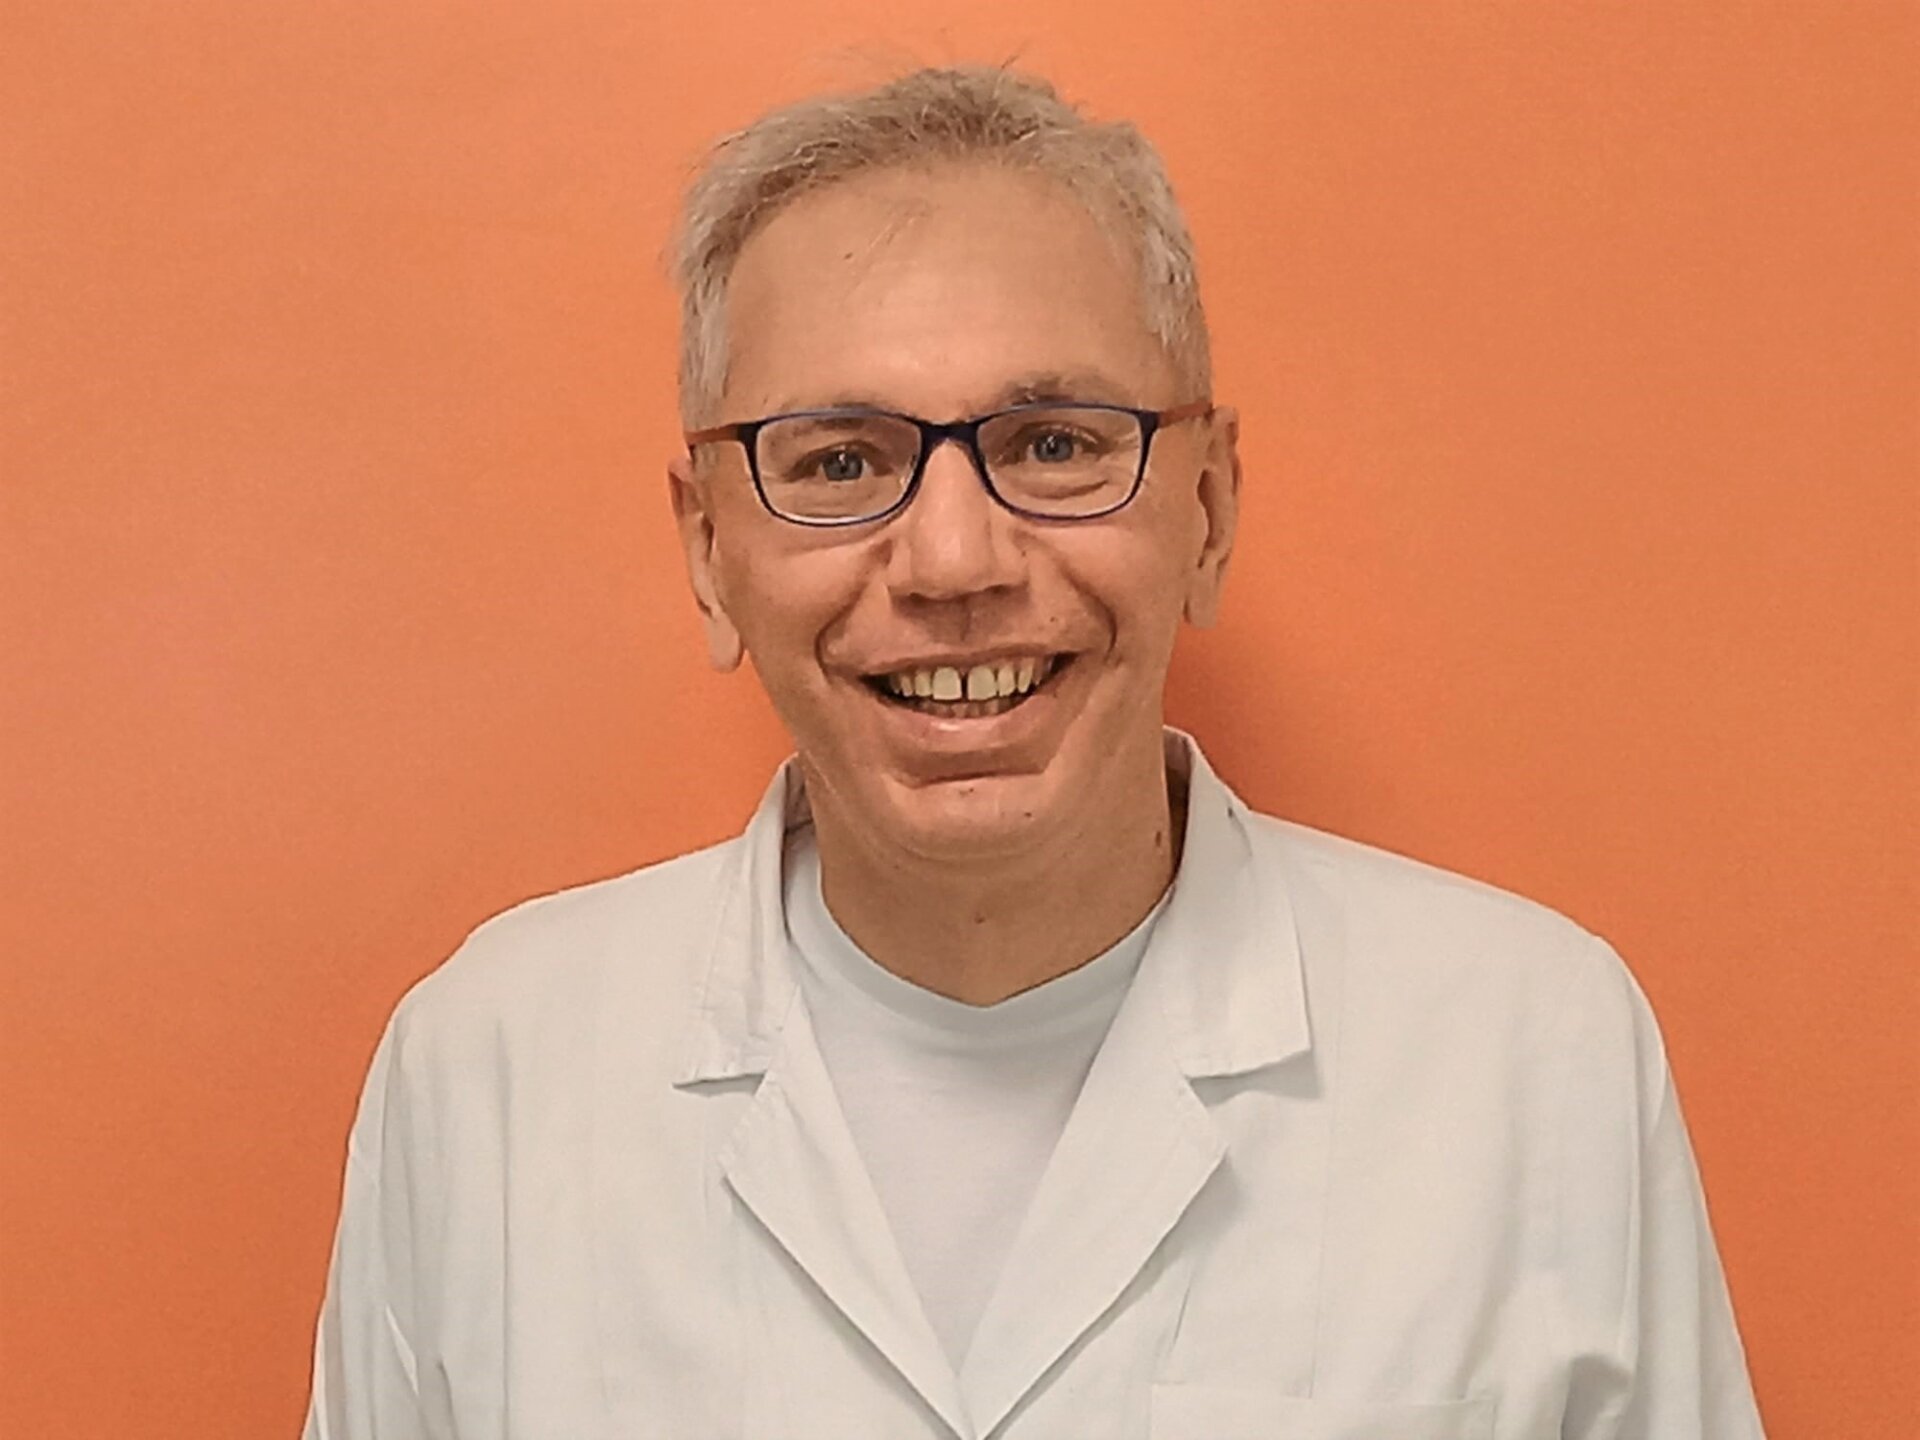 Il dentista dottor De Biase, in servizio all'ospedale Oglio Po